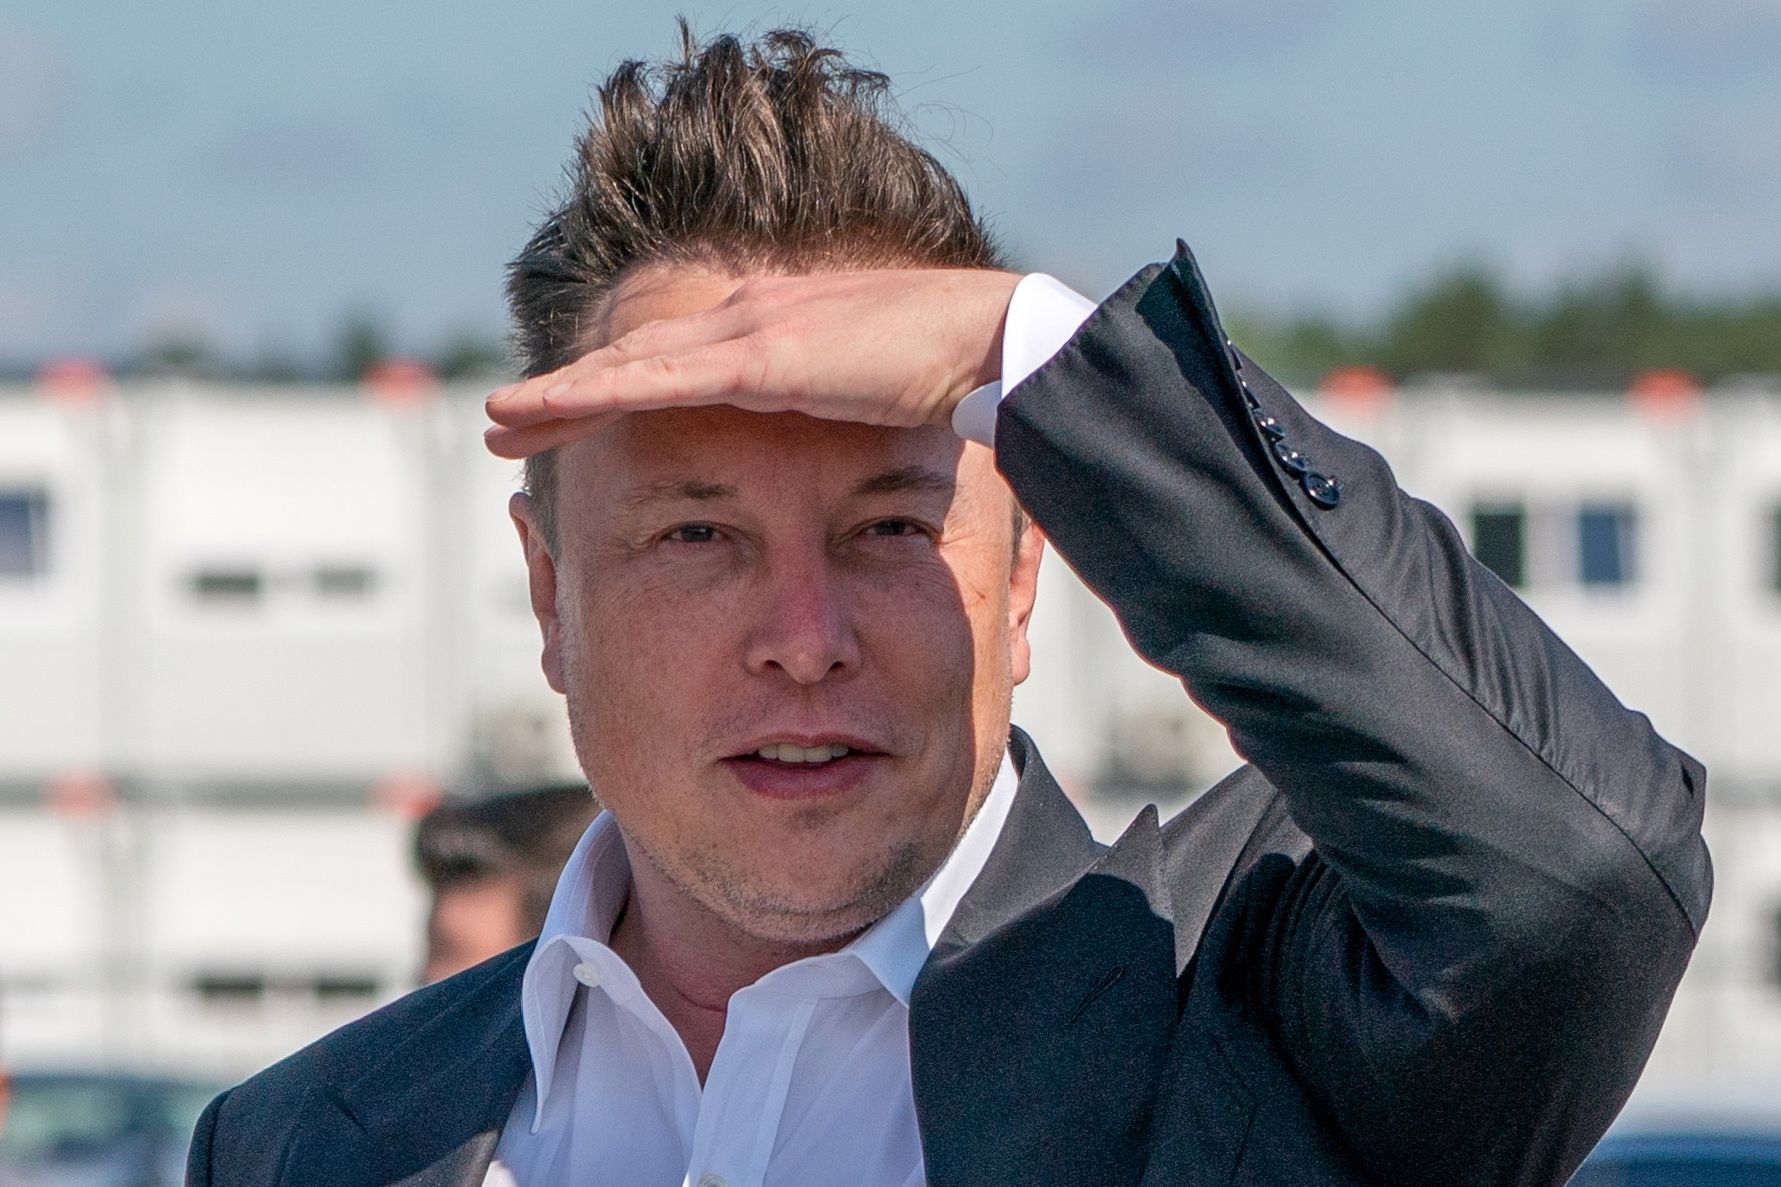 Imagen de Elon Musk, empresario interesado en comprar la red social Twitter, en una imagen de 2020.